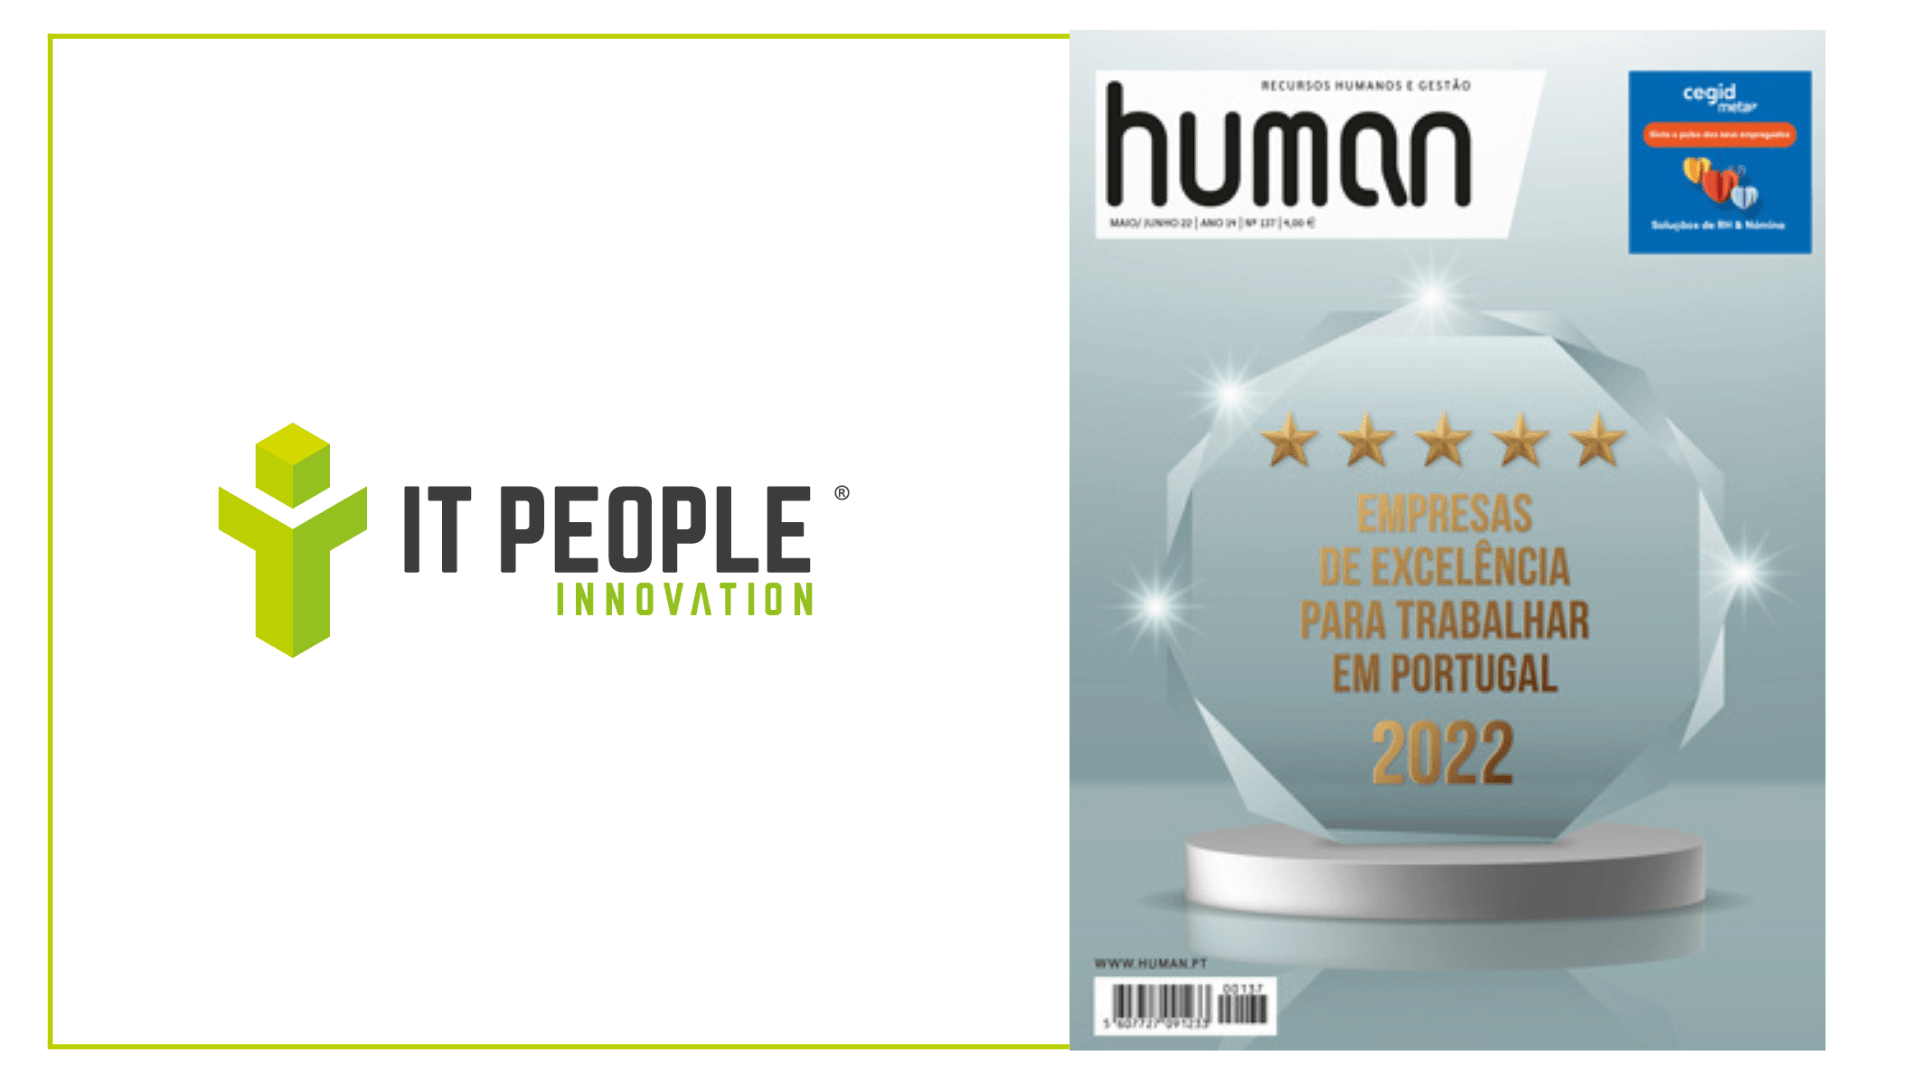 IT People empresa de excelência revista human